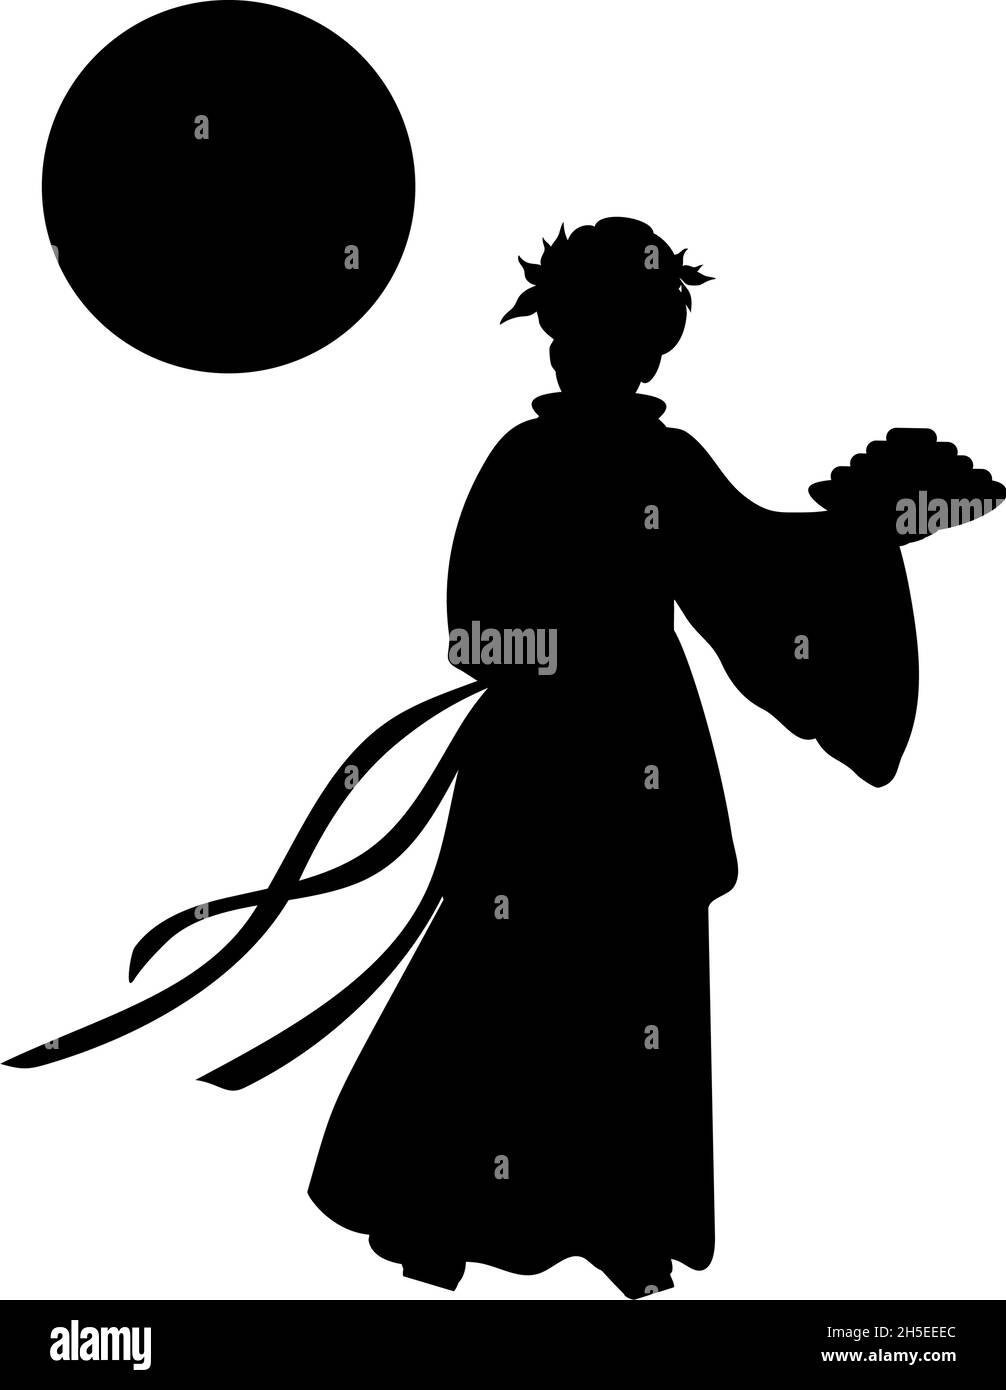 Silhouette chinesische Göttin des Mondes mit Mondkuchen. Herbstfest. Stock Vektor